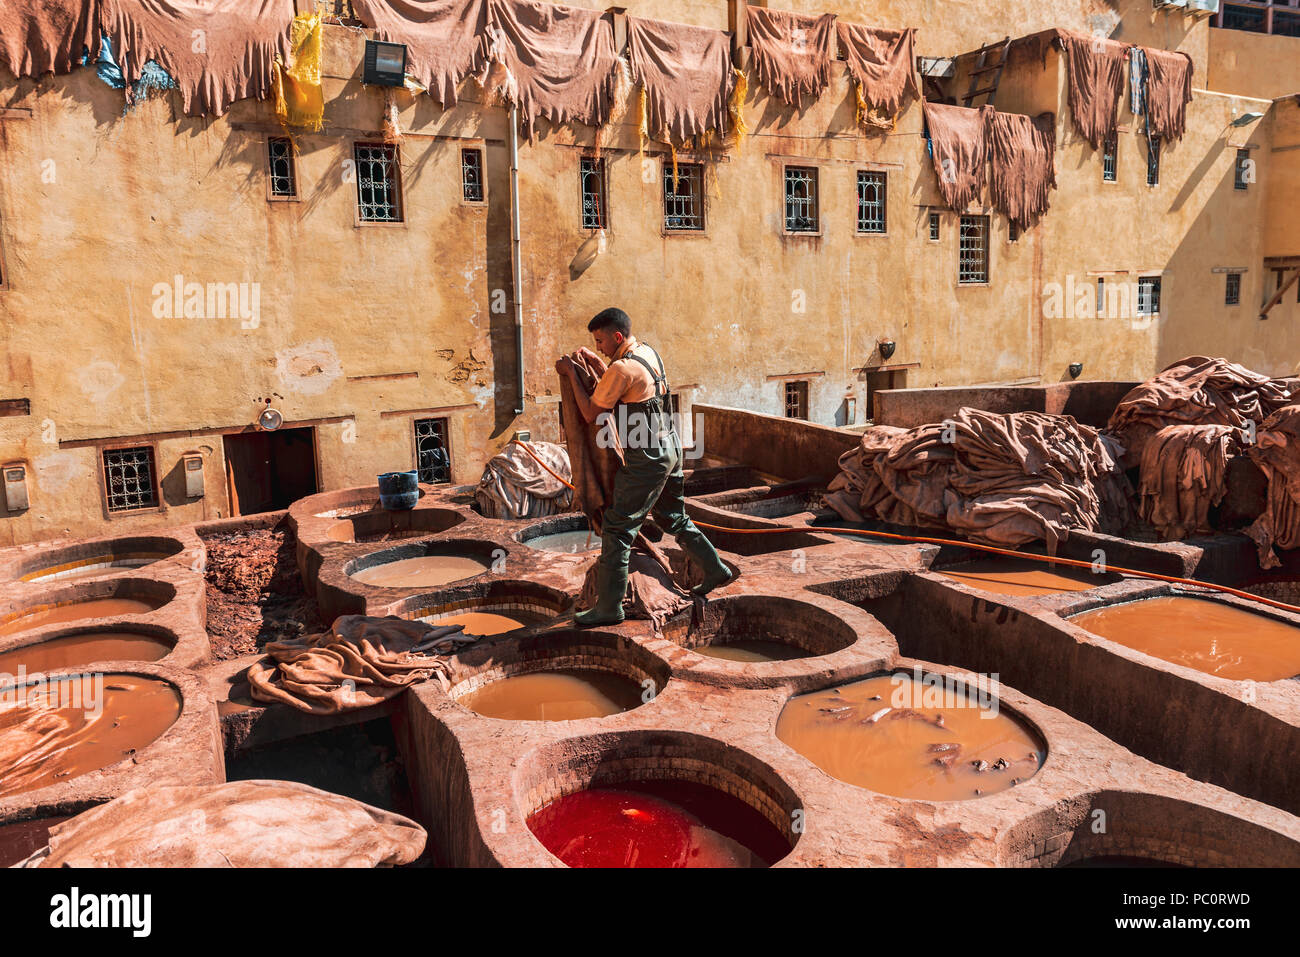 La teinture des travailleurs du cuir, bassin avec la peinture, la teinture, la tannerie Tannerie Chouara, tanner et dyer trimestre, Fes el Bali, Fes, Maroc Banque D'Images